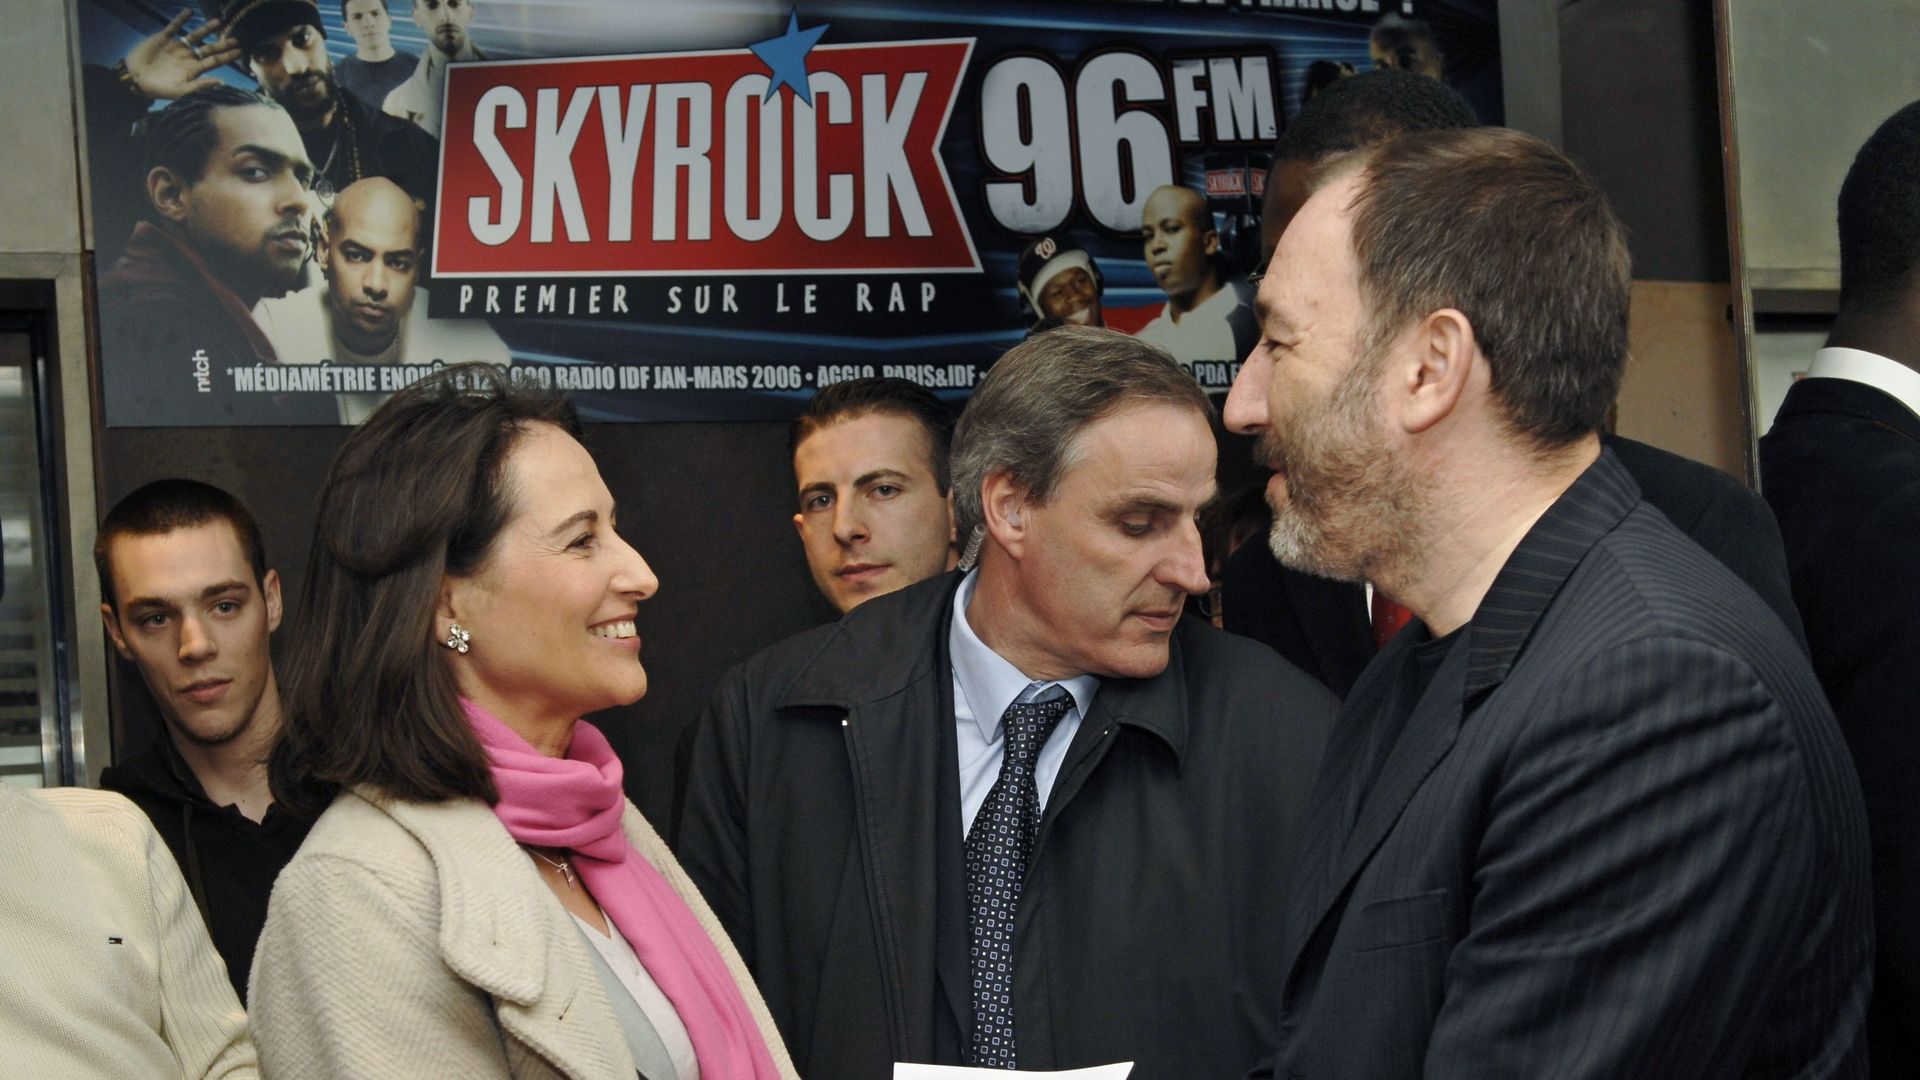 Pierre Bellanger, patron de la radio française Skyrock, ici en compagnie de Ségolène Royal en 2007.